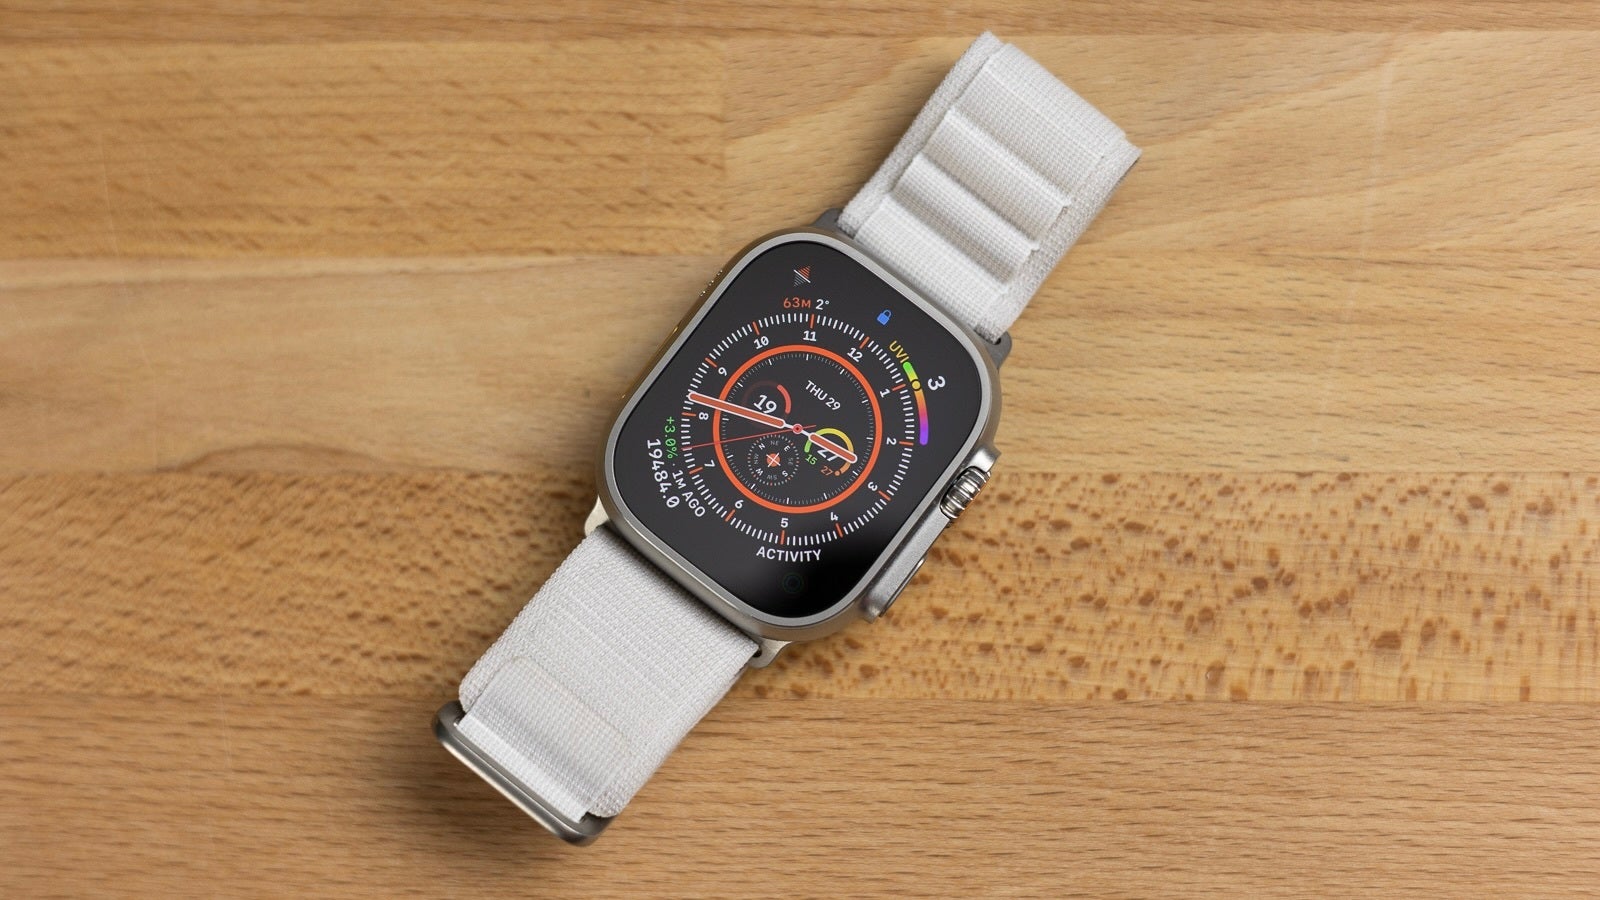 Reemplazar mi iPhone 14 Pro Max con un Apple Watch Ultra: lo que he aprendido viviendo sin un teléfono inteligente